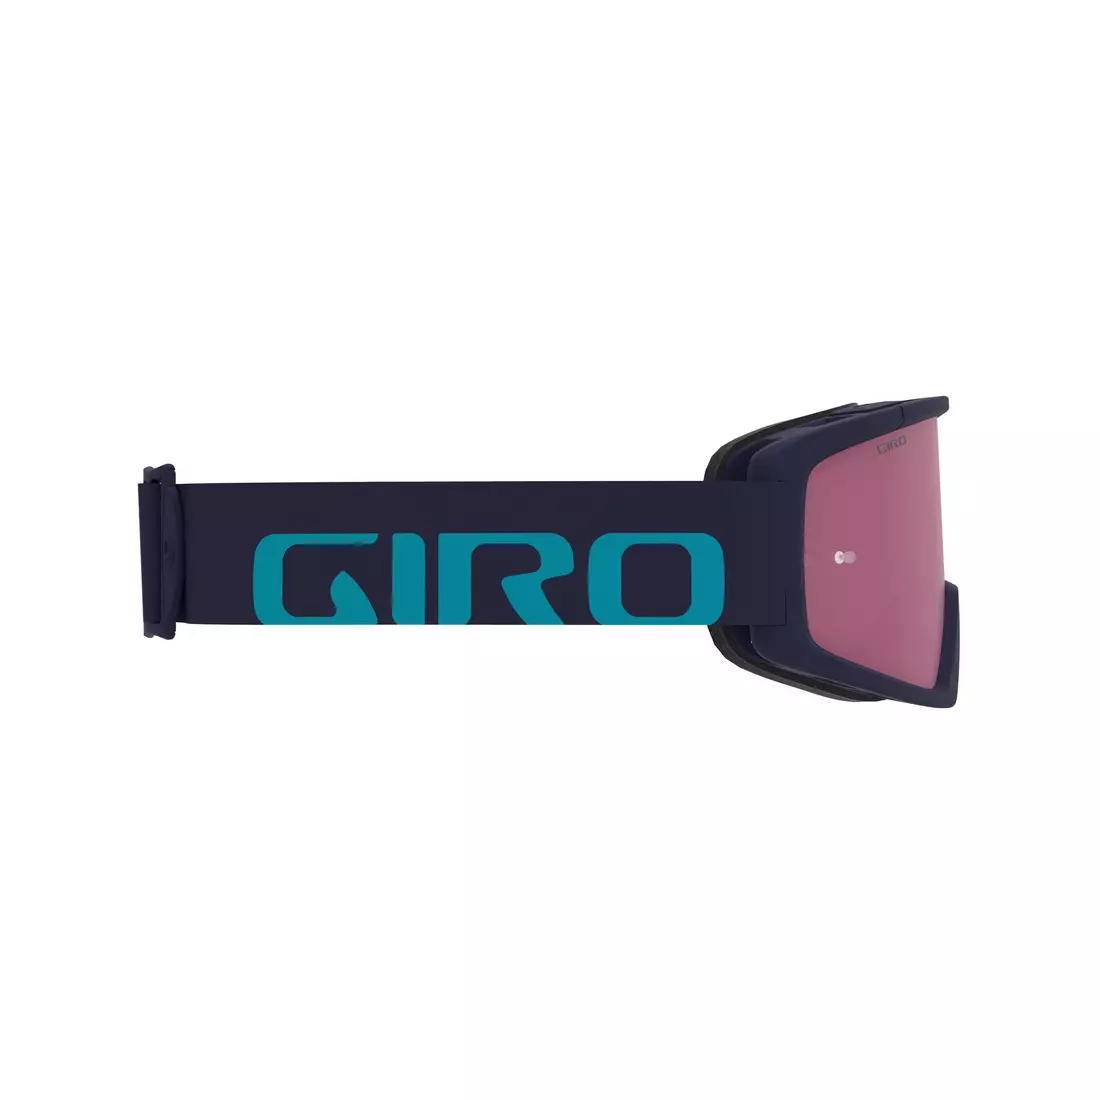 GIRO kerékpár szemüveg tazz mtb midnight iceberg (Színes üveg VIVID-Carl Zeiss TRAIL + átlátszó üveg 99% S0) GR-7114594